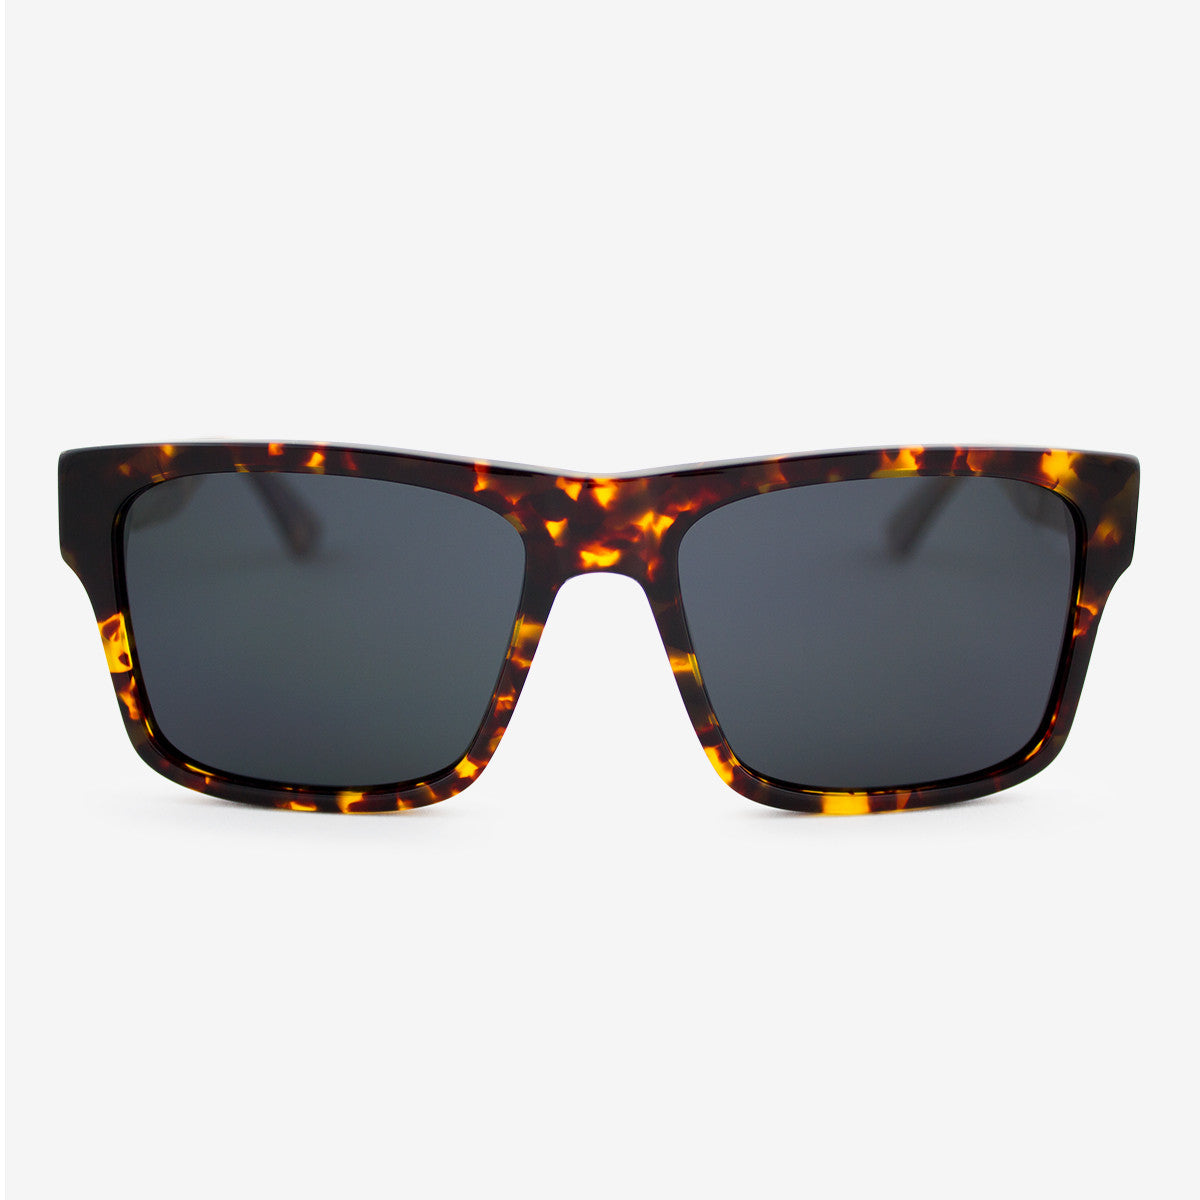 Sebastian tortoiseshell acetate and wood sunglasses